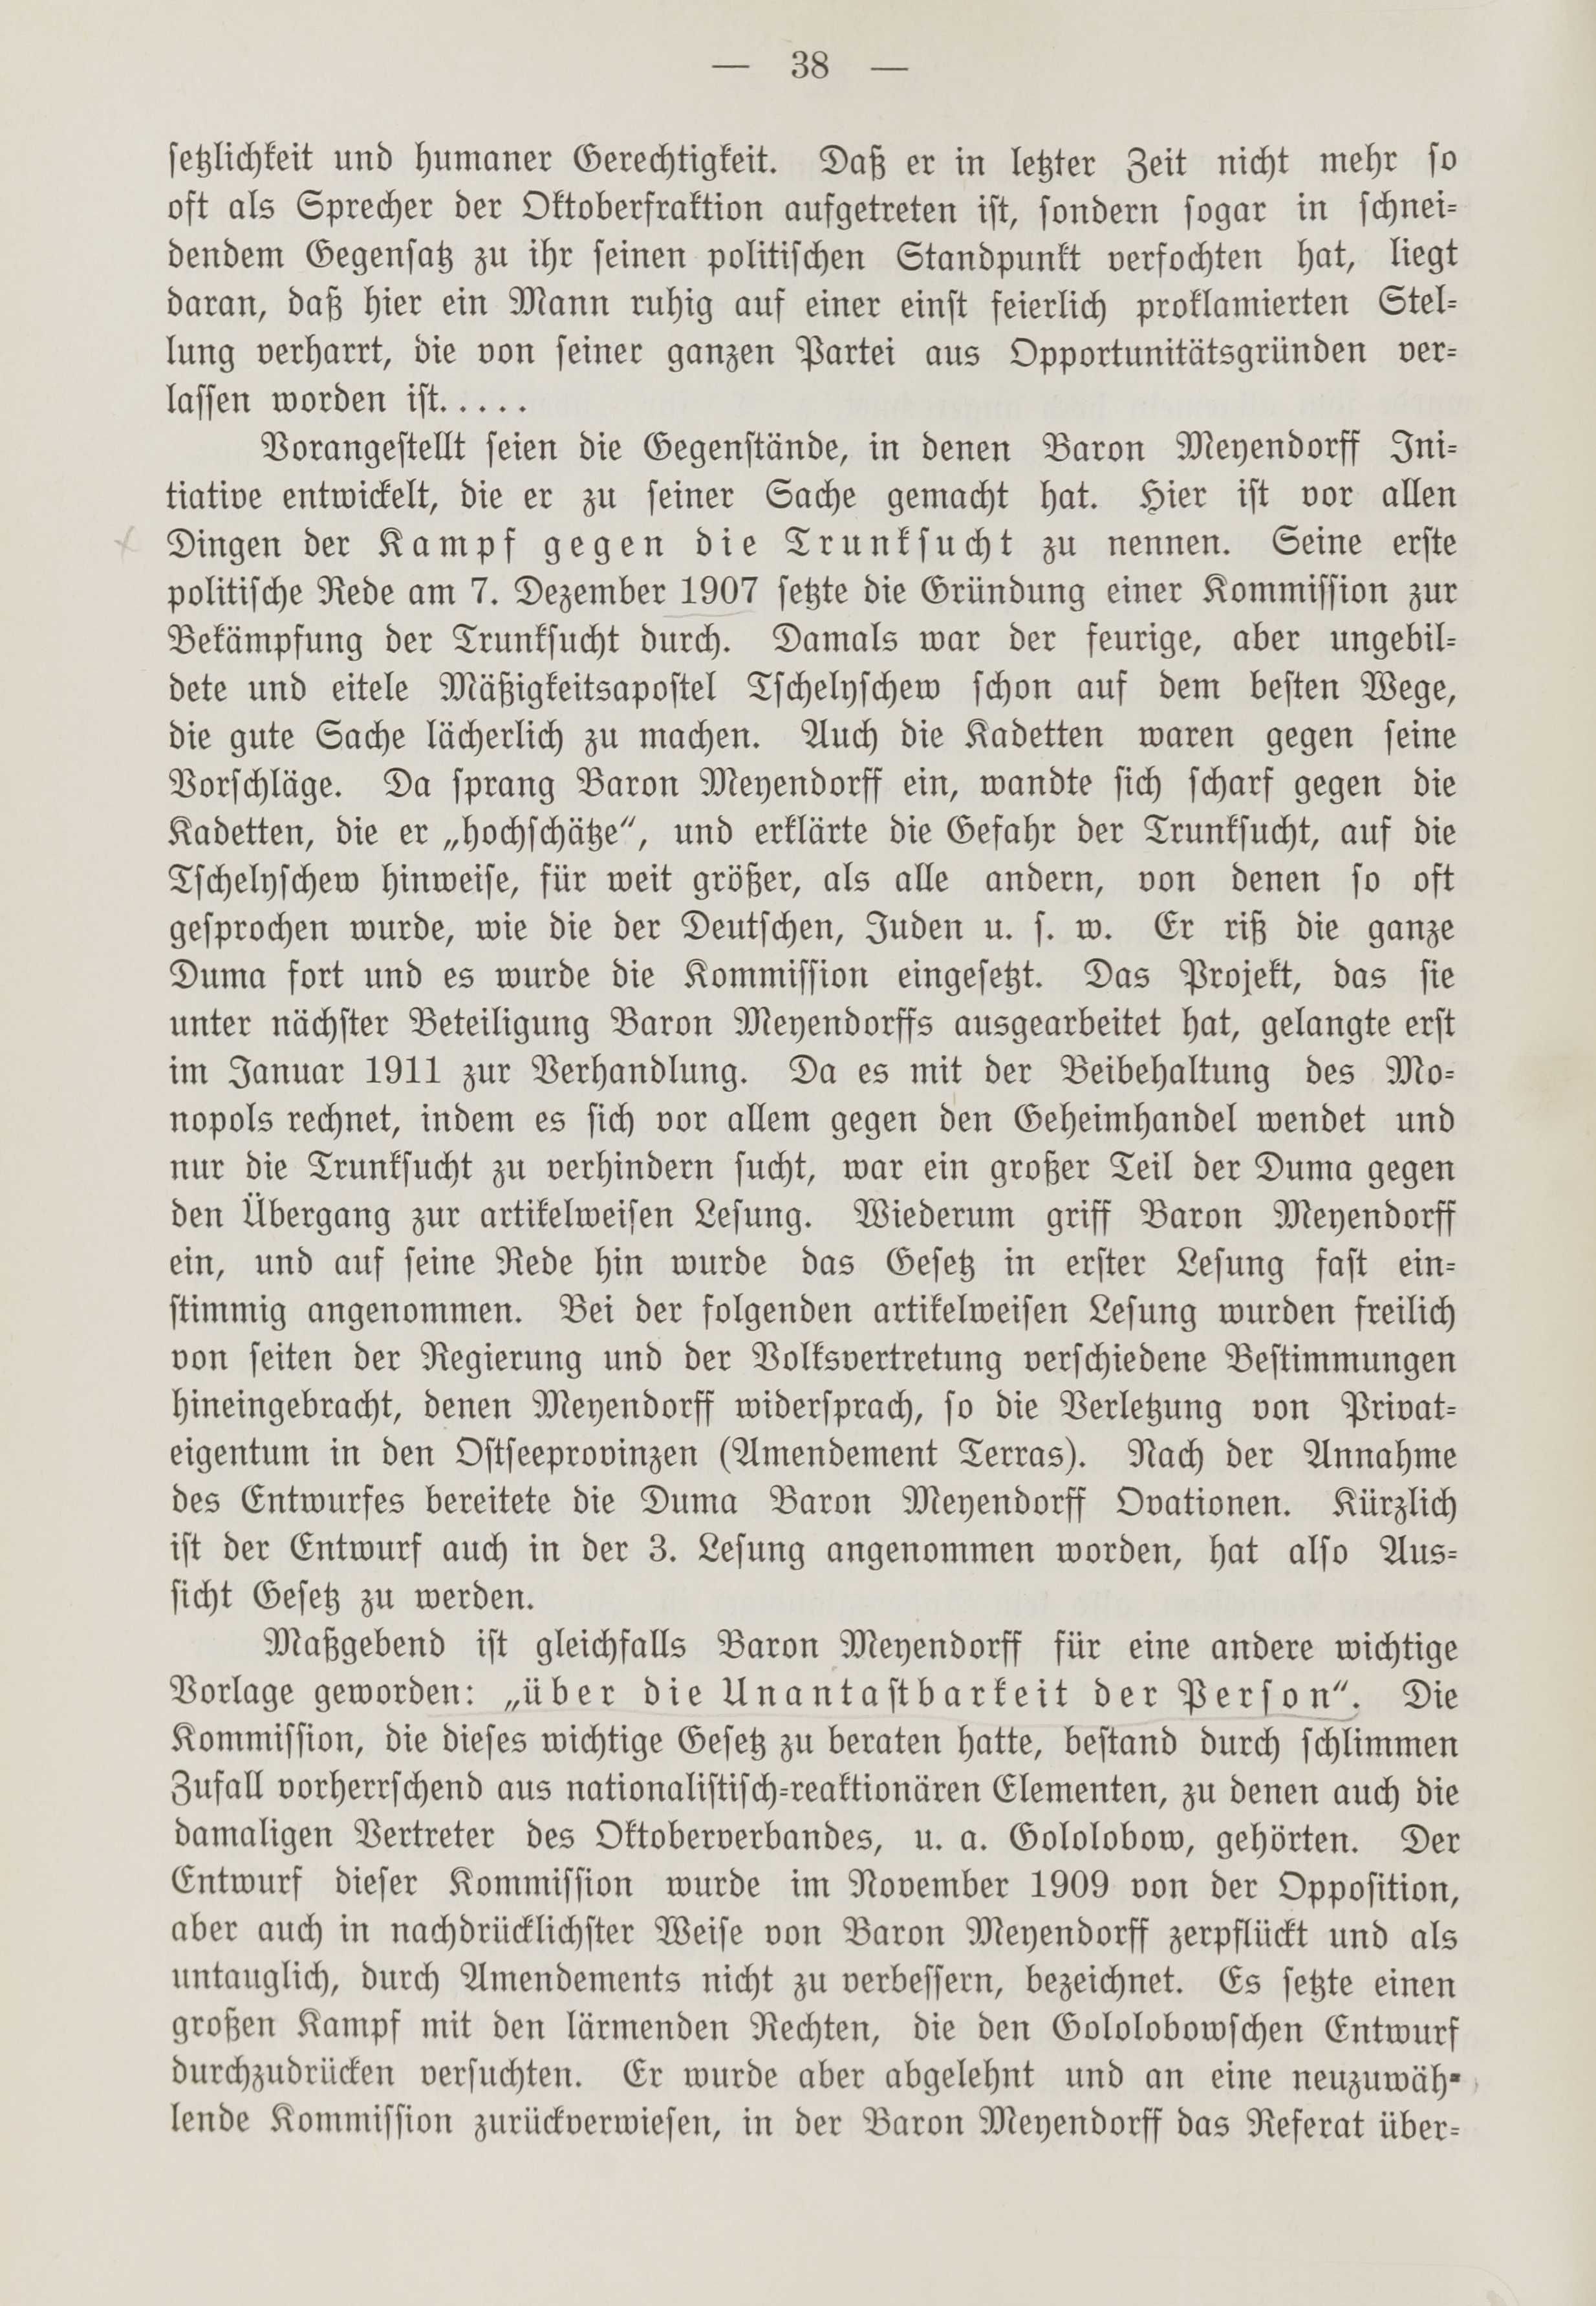 Deutsche Monatsschrift für Russland [1] (1912) | 45. (38) Main body of text